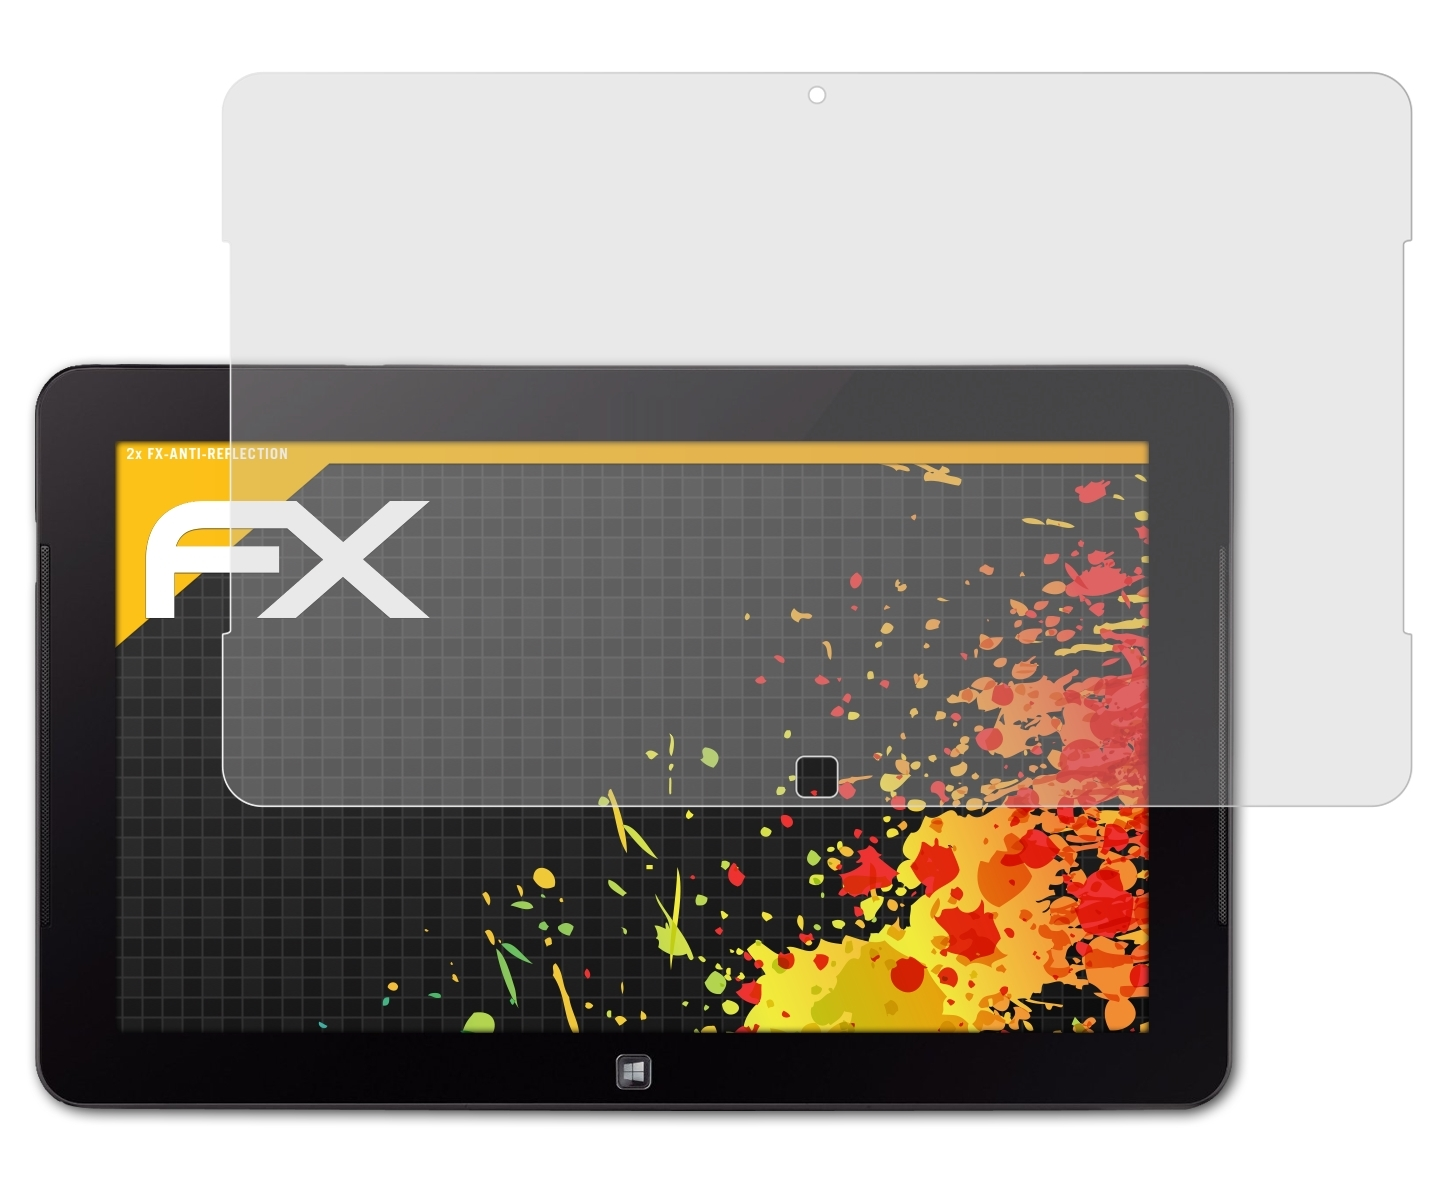 ATFOLIX 2x FX-Antireflex Samsung (11.6 Tab PC Ativ Inch)) Pro 700T) 7 Displayschutz(für (Smart